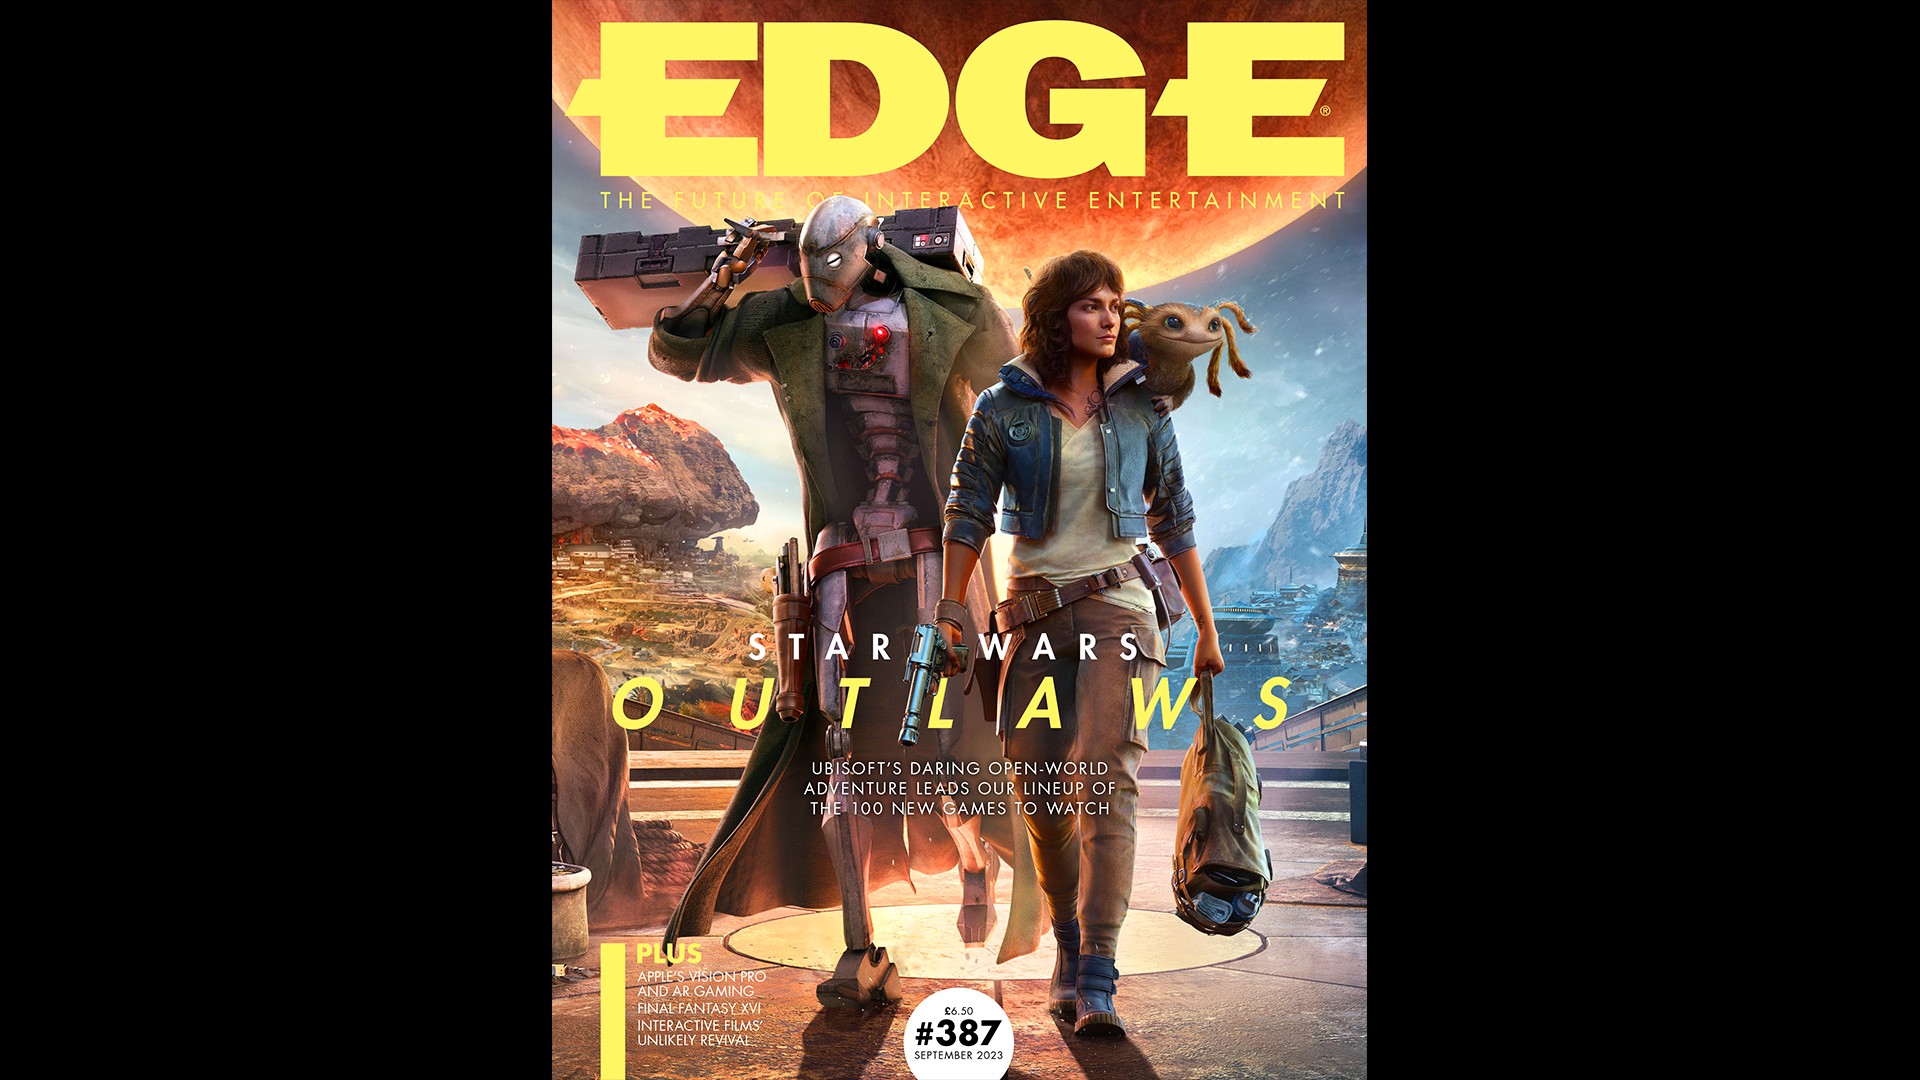 La dernière couverture d'Edge, qui présente Star Wars : Outlaws